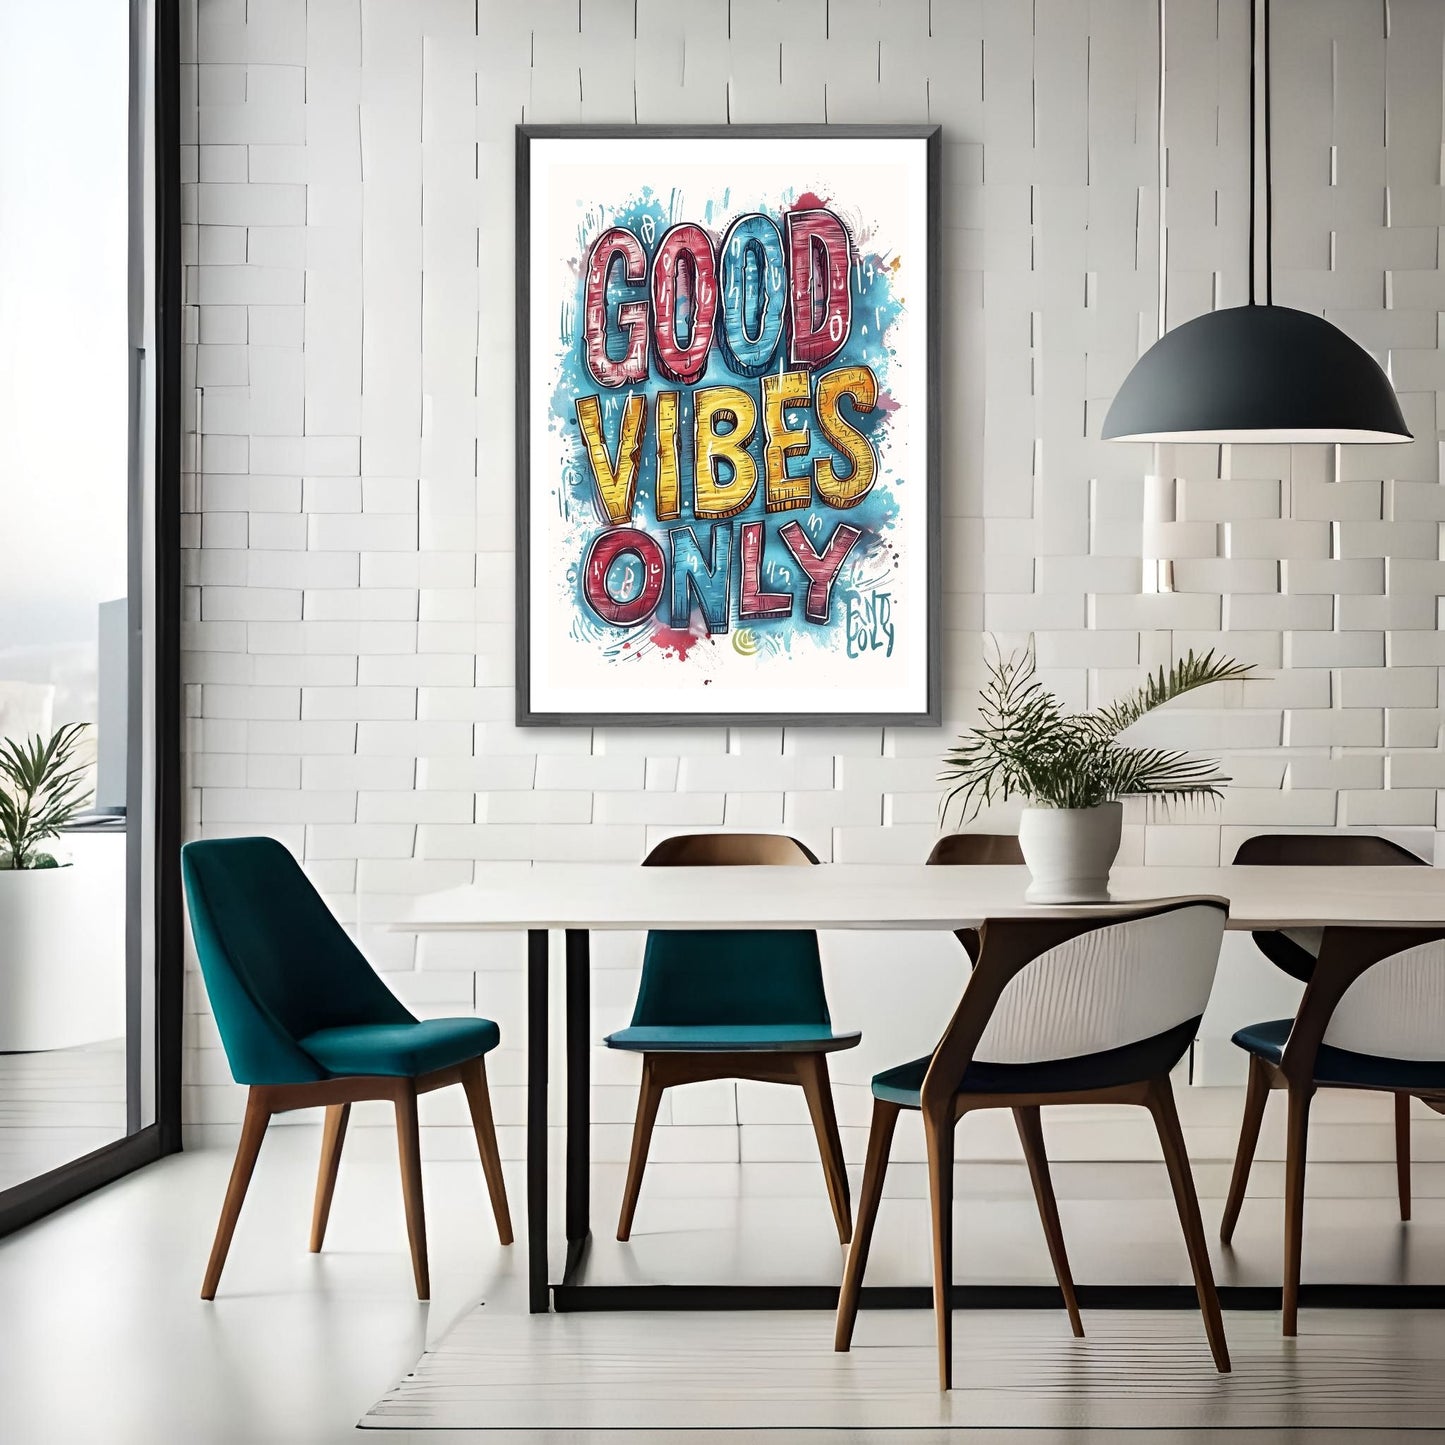 Grafisk illustrasjon med teksten "Good Vibes Only" i store, fete bokstaver i rødt, gult og blått mot en blå bakgrunn. Illustrasjonsfoto av plakat i sort ramme på en vegg ved et spisebord.